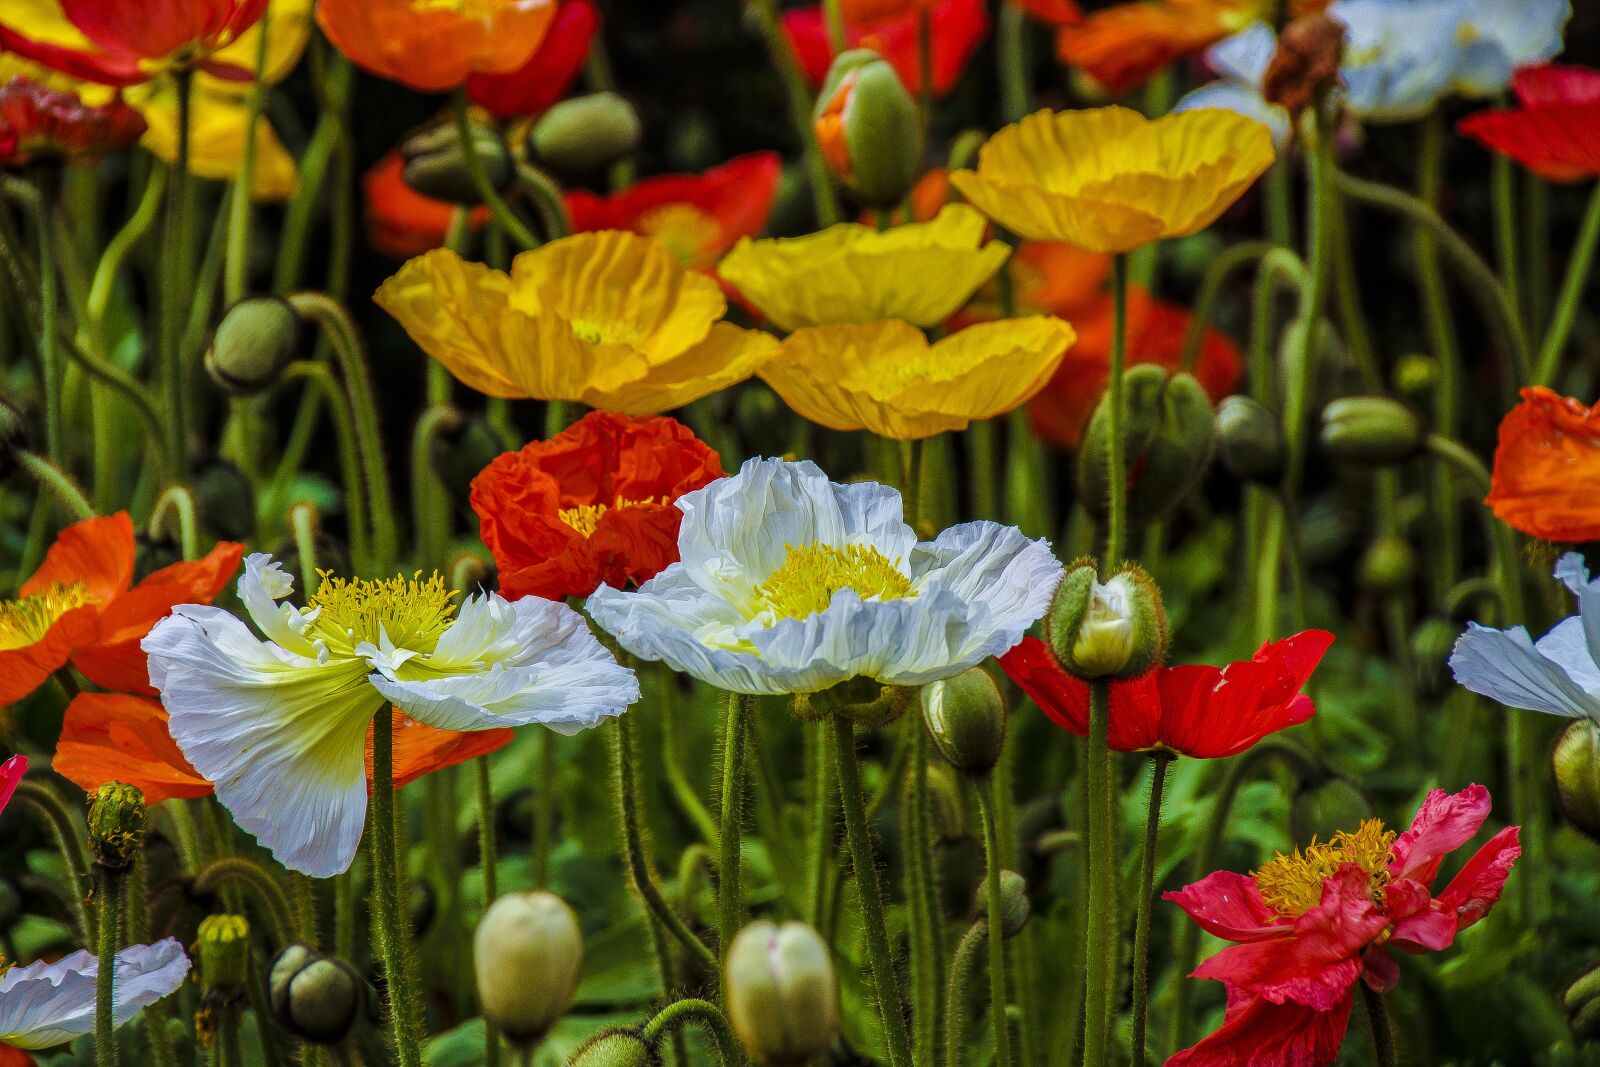 Sony SLT-A65 (SLT-A65V) sample photo. Flowers, garden, petals blossom photography